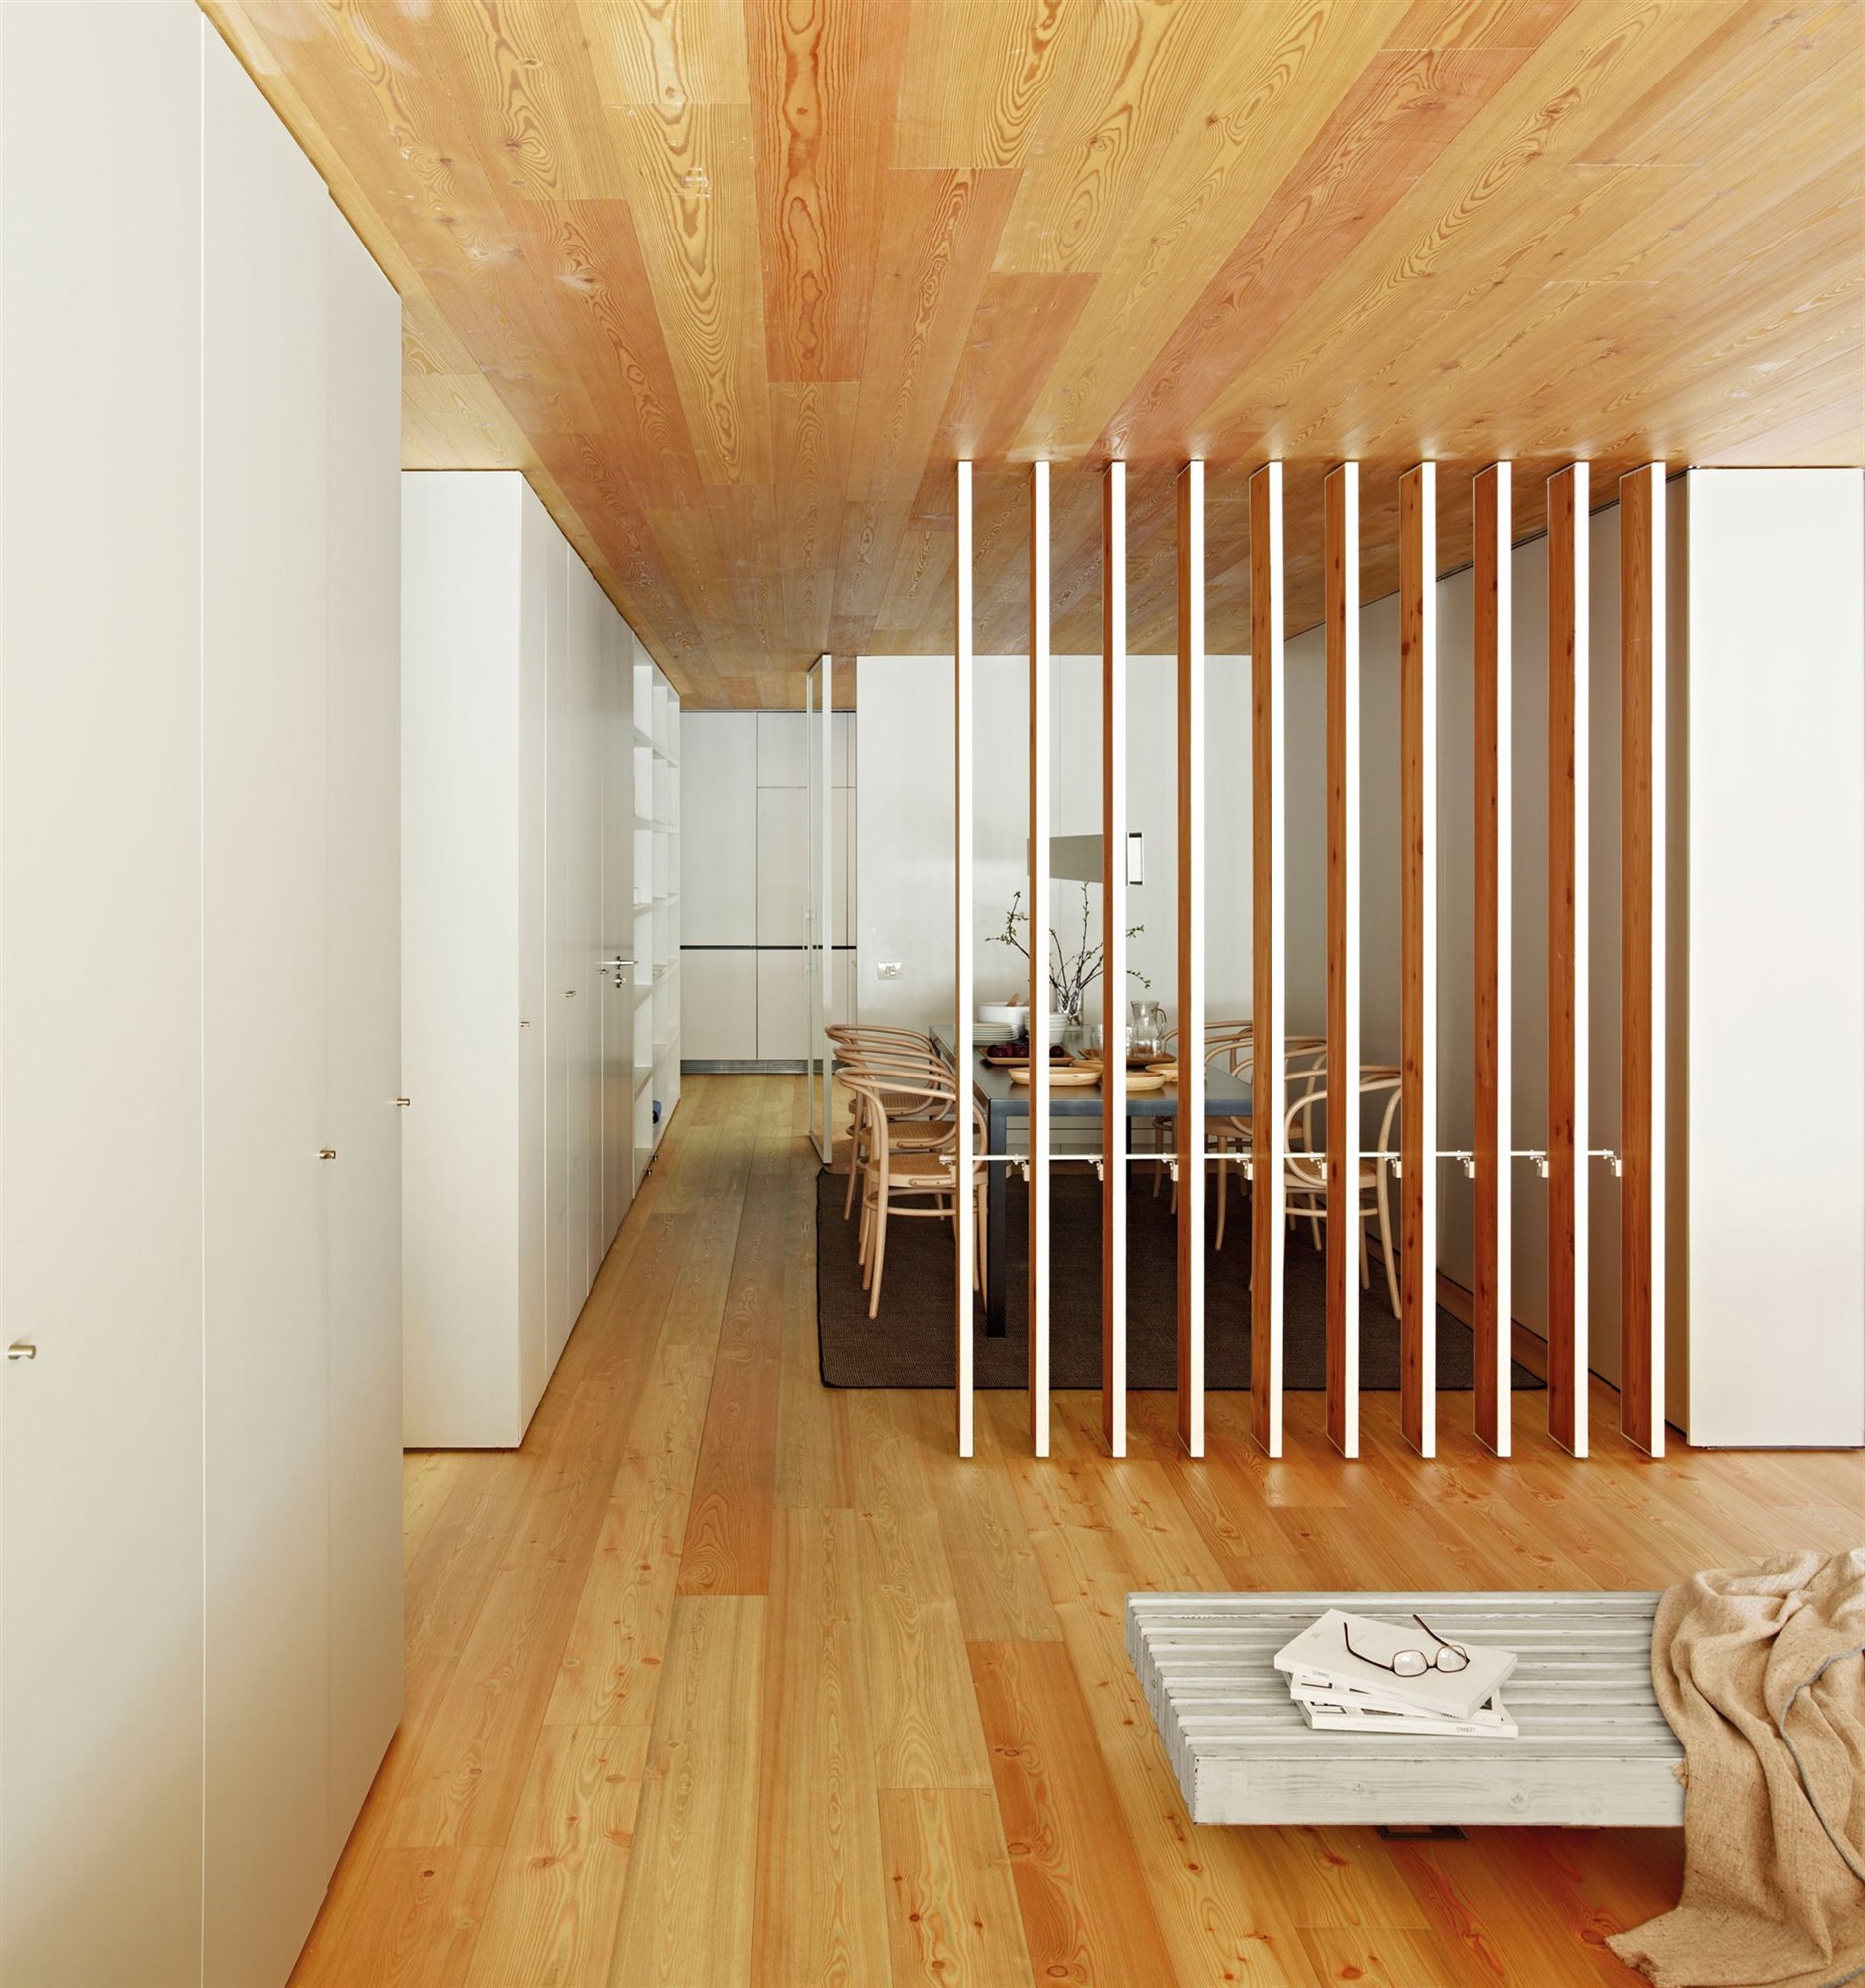 biombo de madera fijo para separar ambientes  Living room divider, Wooden  room dividers, Minimal interior design